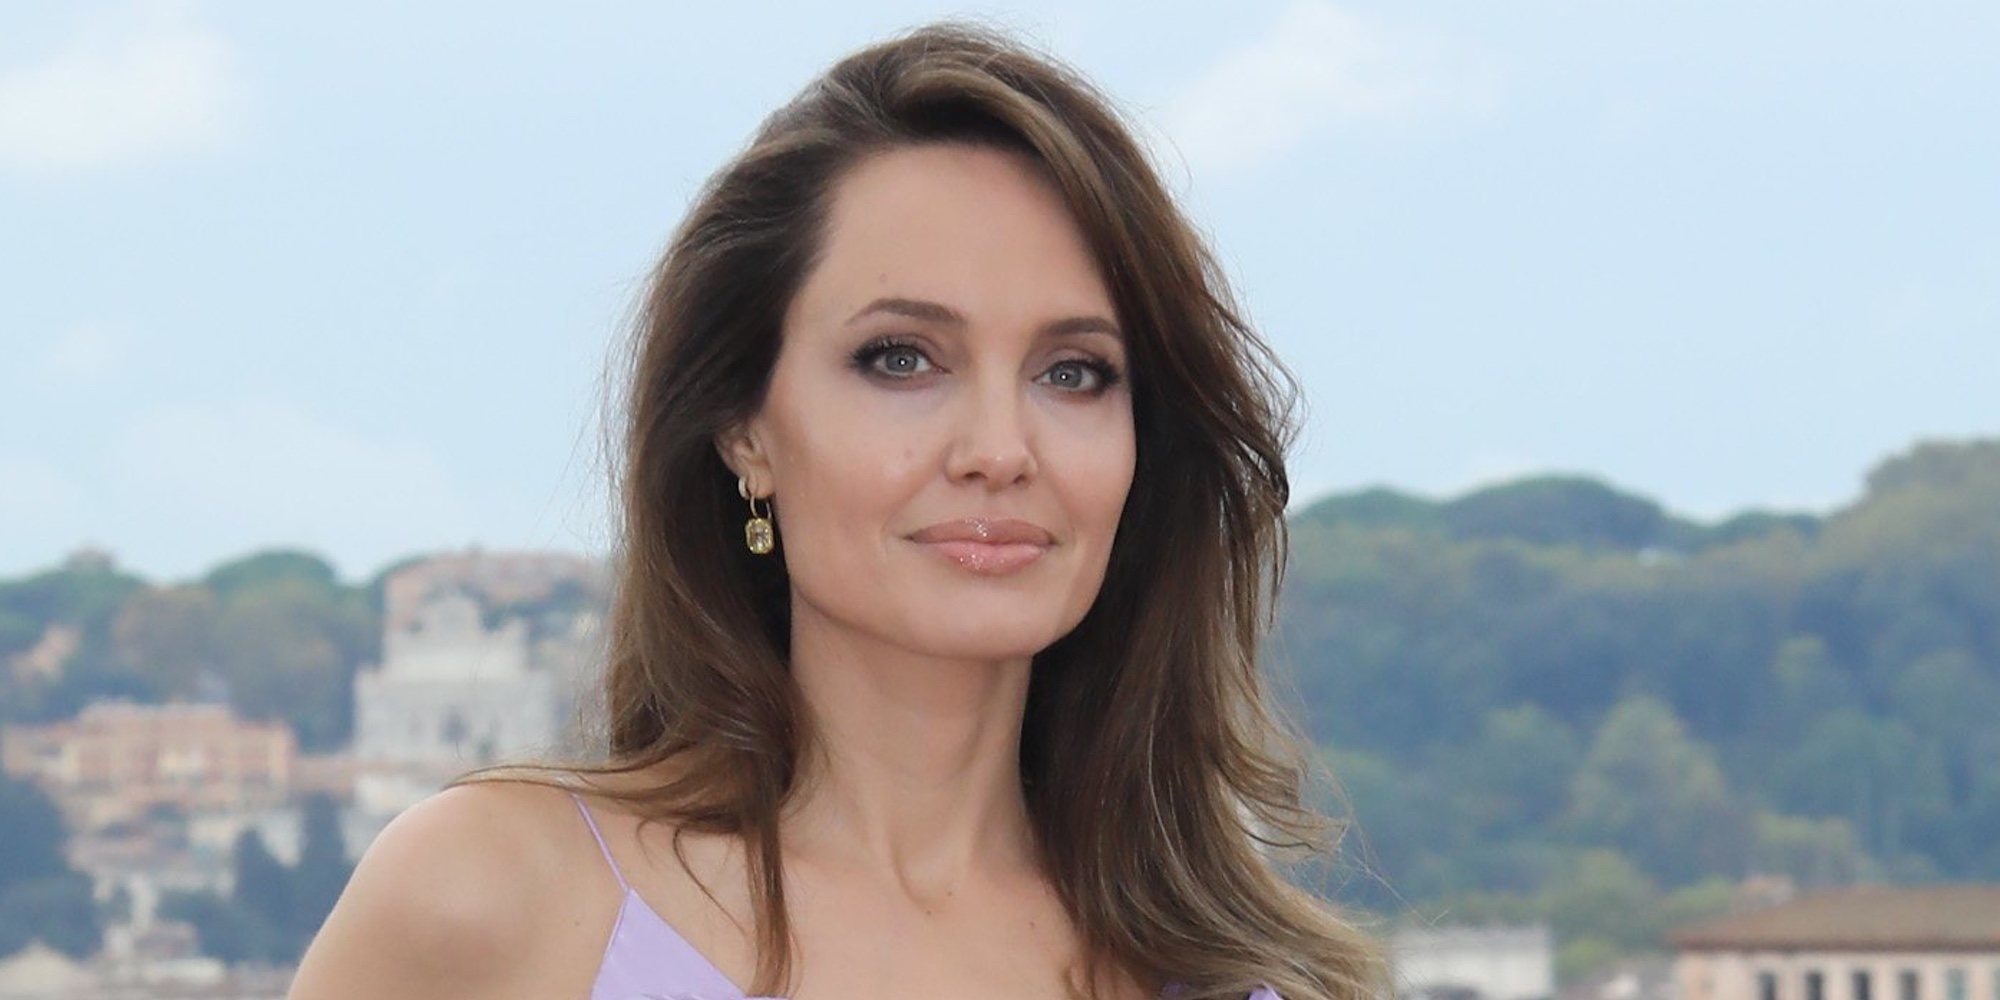 El motivo por el que Angelina Jolie dejó de dirigir tras separarse de Brad Pitt